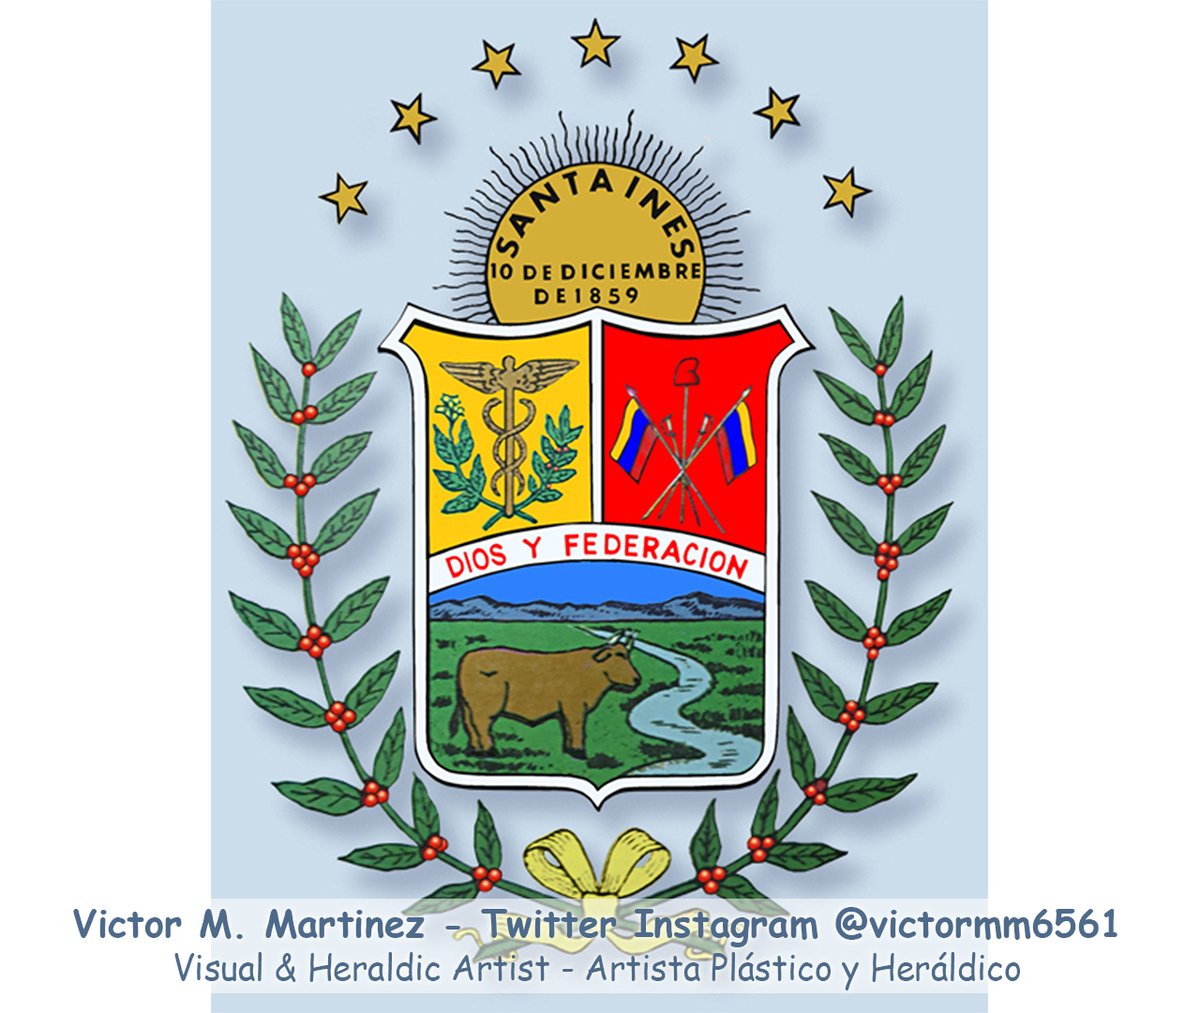 Escudo de Armas del Estado Barinas #Barinas, diseño y arte retocado por el #Artista Plástico y Heráldico Victor M. Martinez, siga y apoye mi obra 👈

#Art 🎨 #Heraldica ⚔️ #Heraldry #GraphicDesign #digitalart #design 📐 #Arte #ArtForSale 💰 #ArtGallery #Love for #Venezuela 🇻🇪